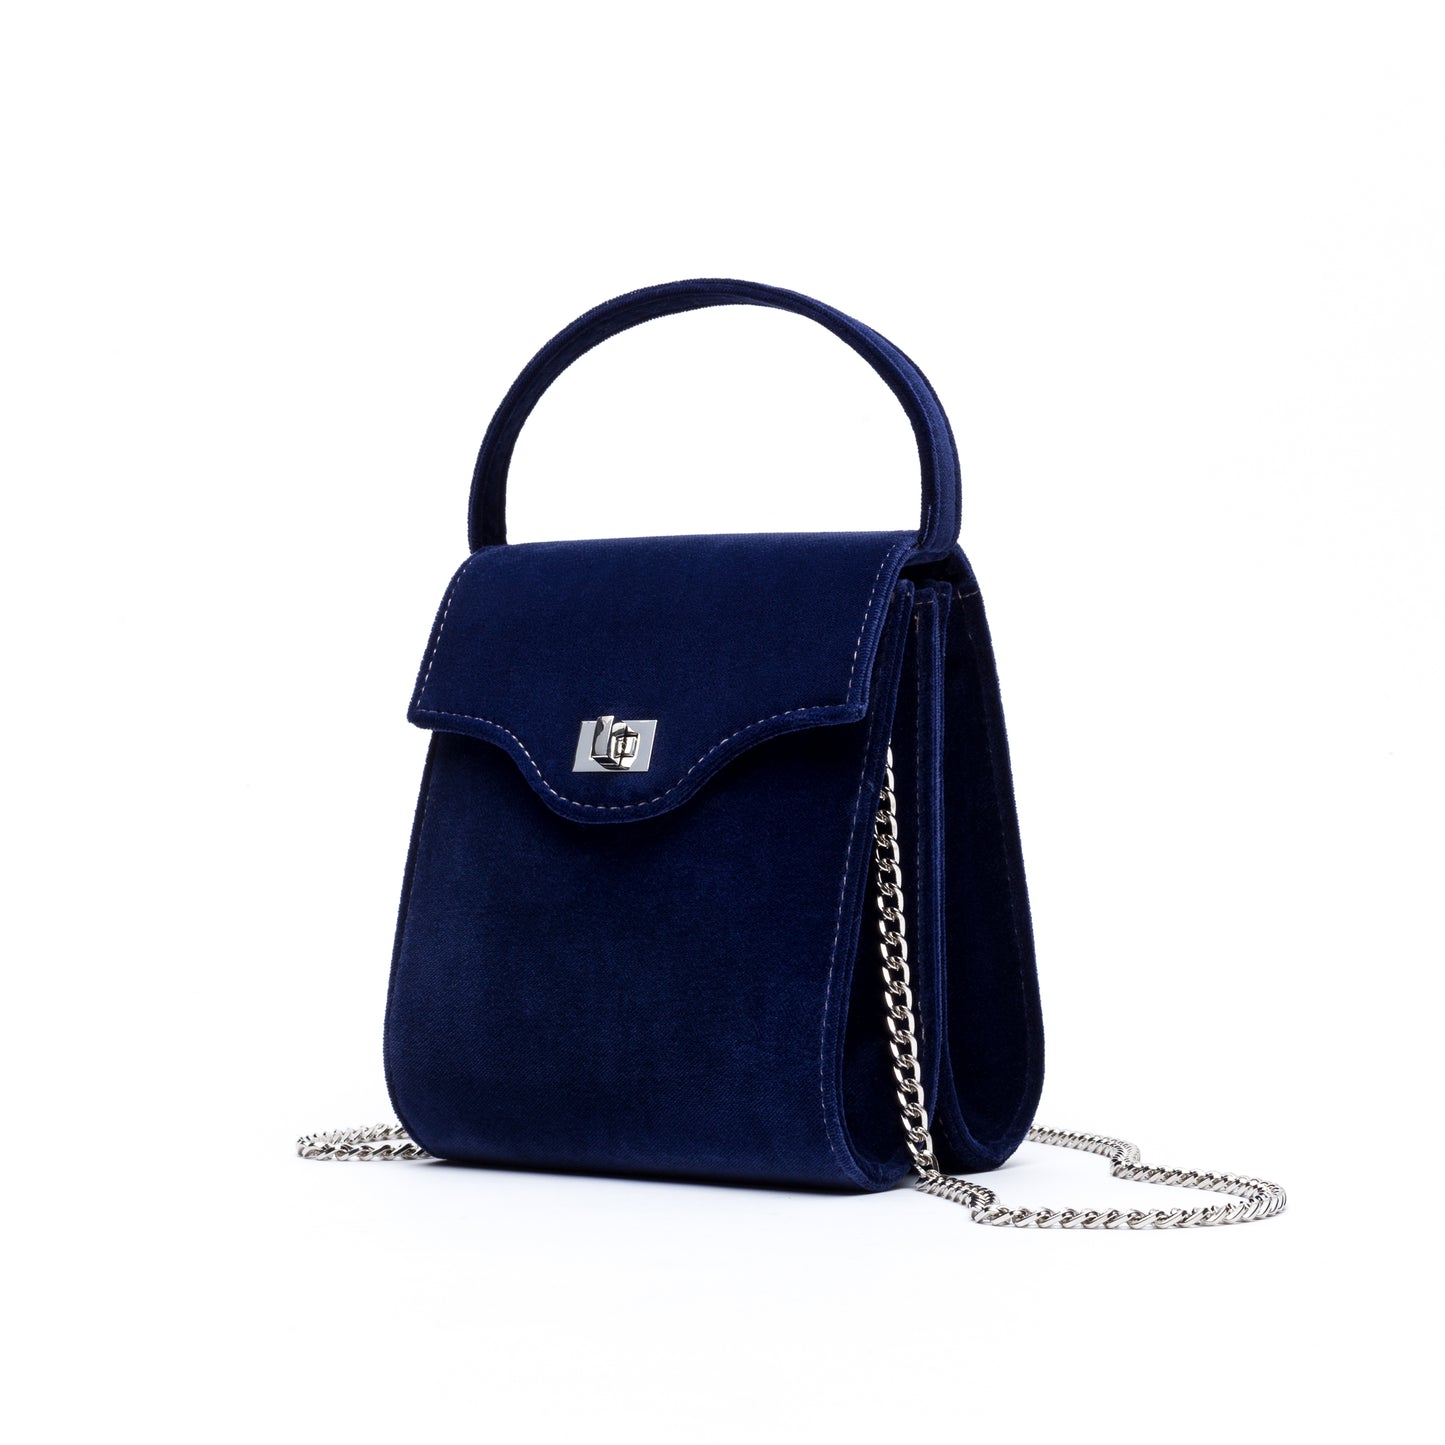 Cucci- Navy Blue Velvet Bag